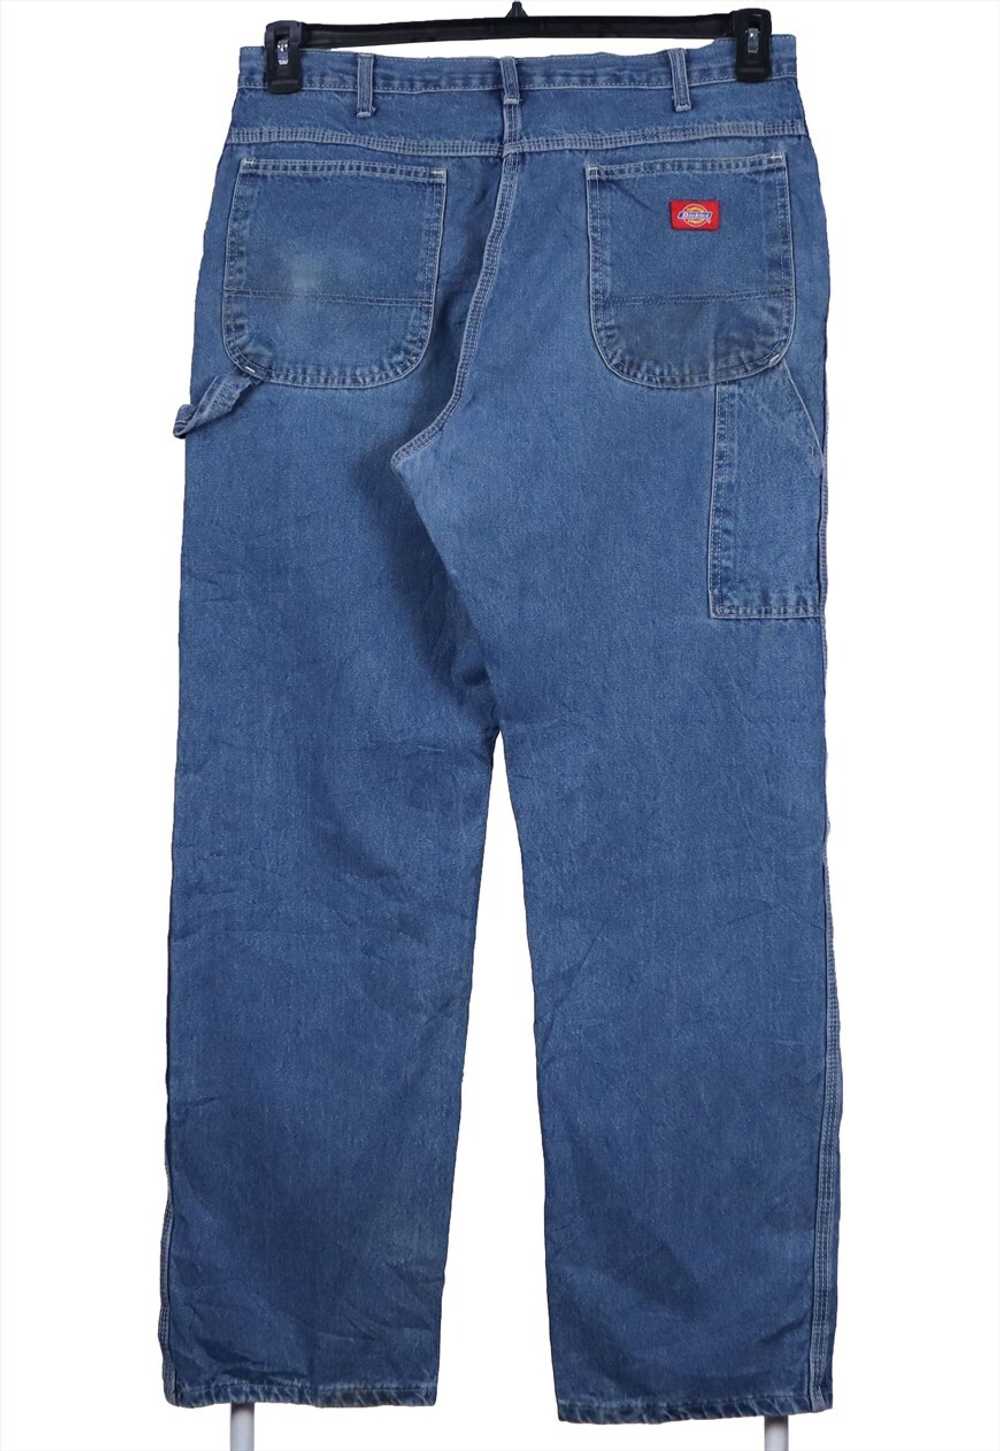 Vintage 90's Dickies Jeans / Pants Carpenter Work… - image 1